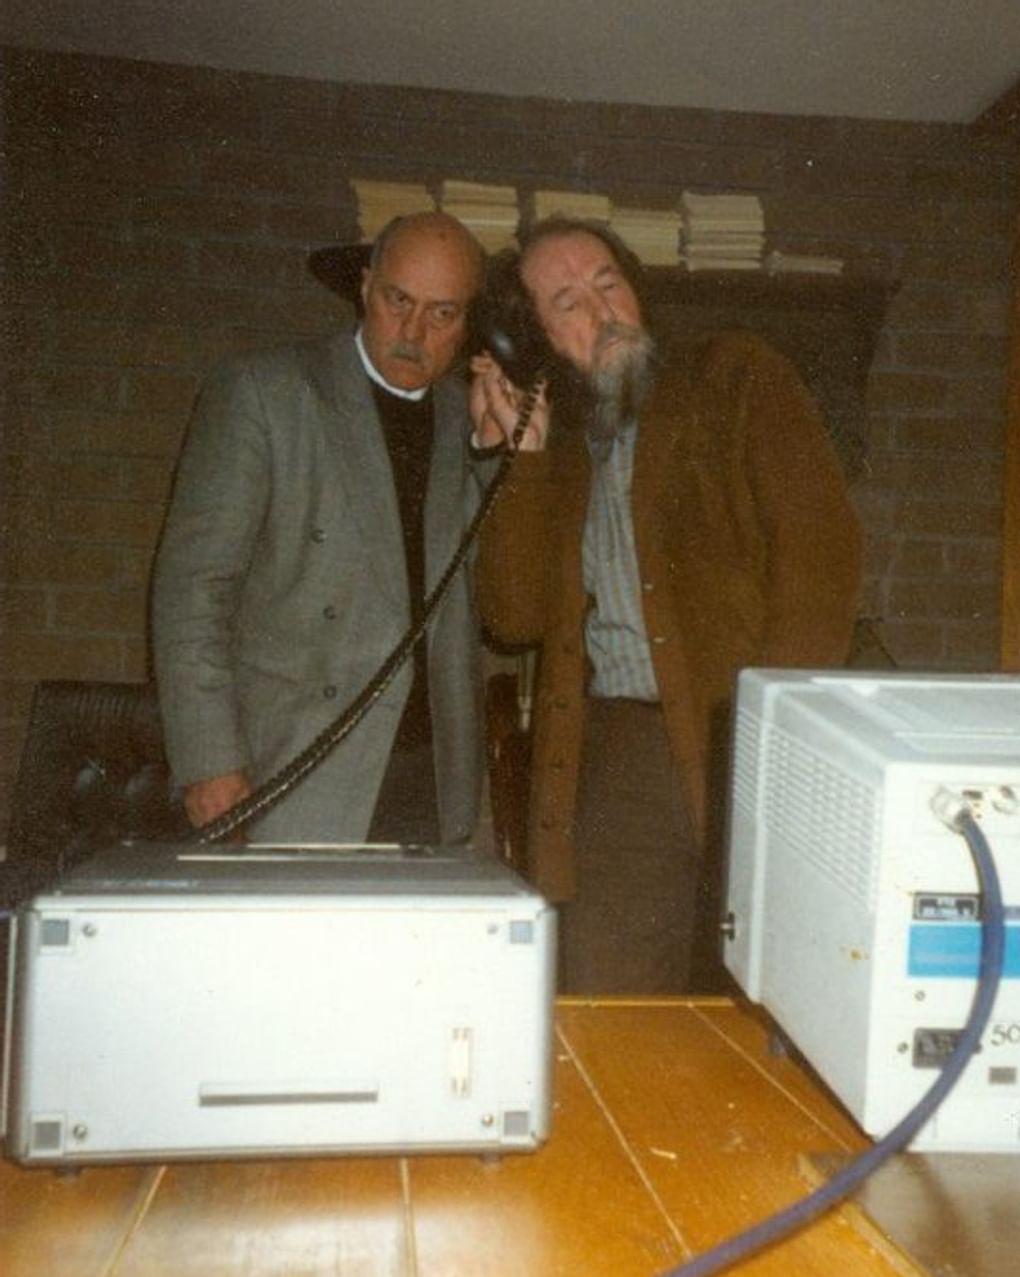 Станислав Говорухин (слева) и писатель Александр Солженицын. Вермонт, США, 1991 год. Фотография: Государственный центральный музей кино, Москва